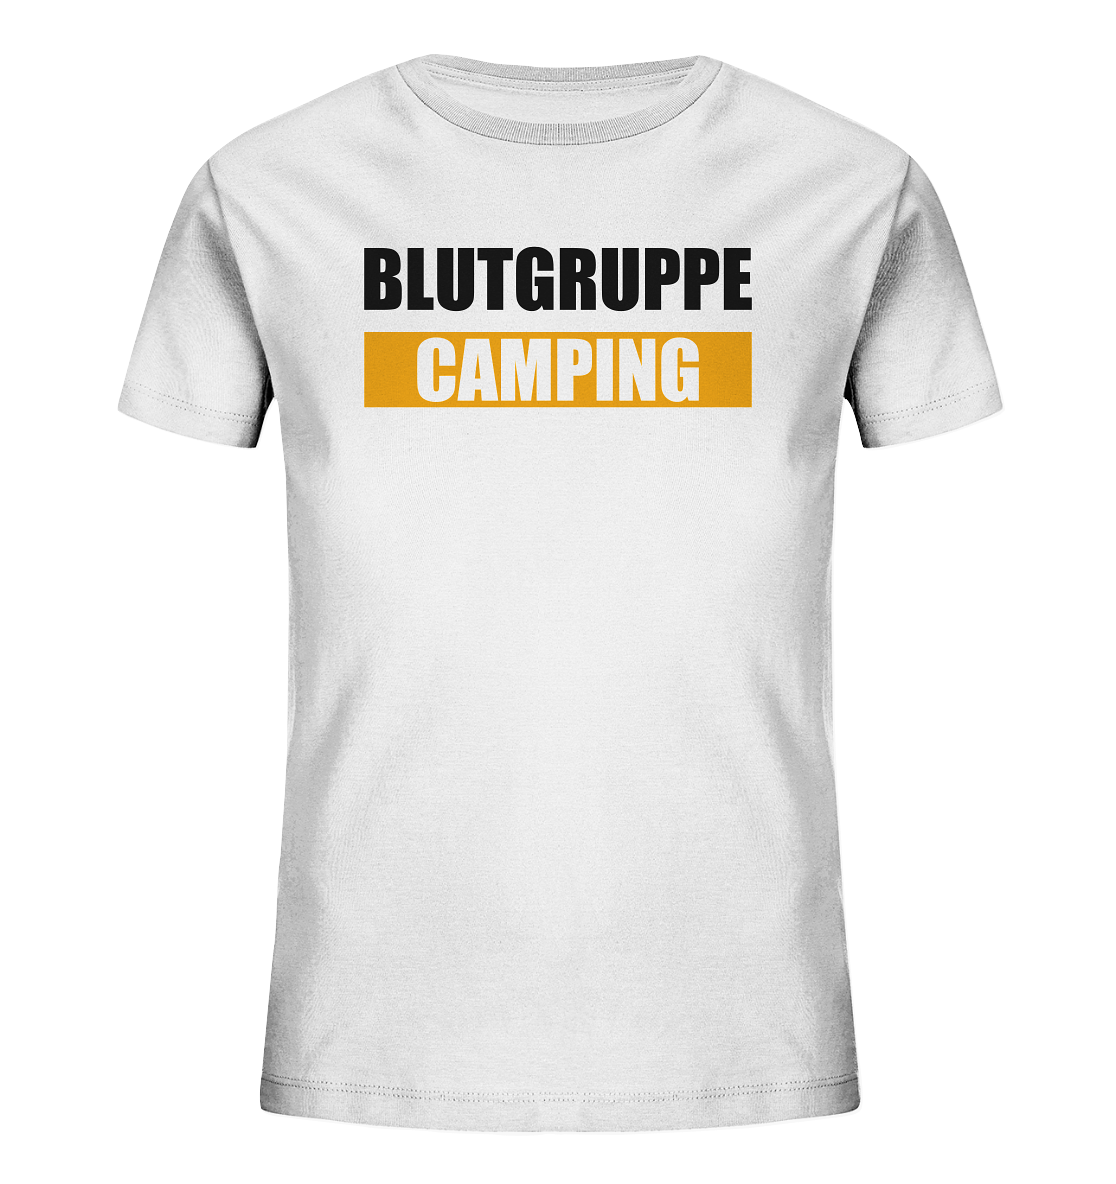 Blutgruppe Camping - Kids Organic Shirt